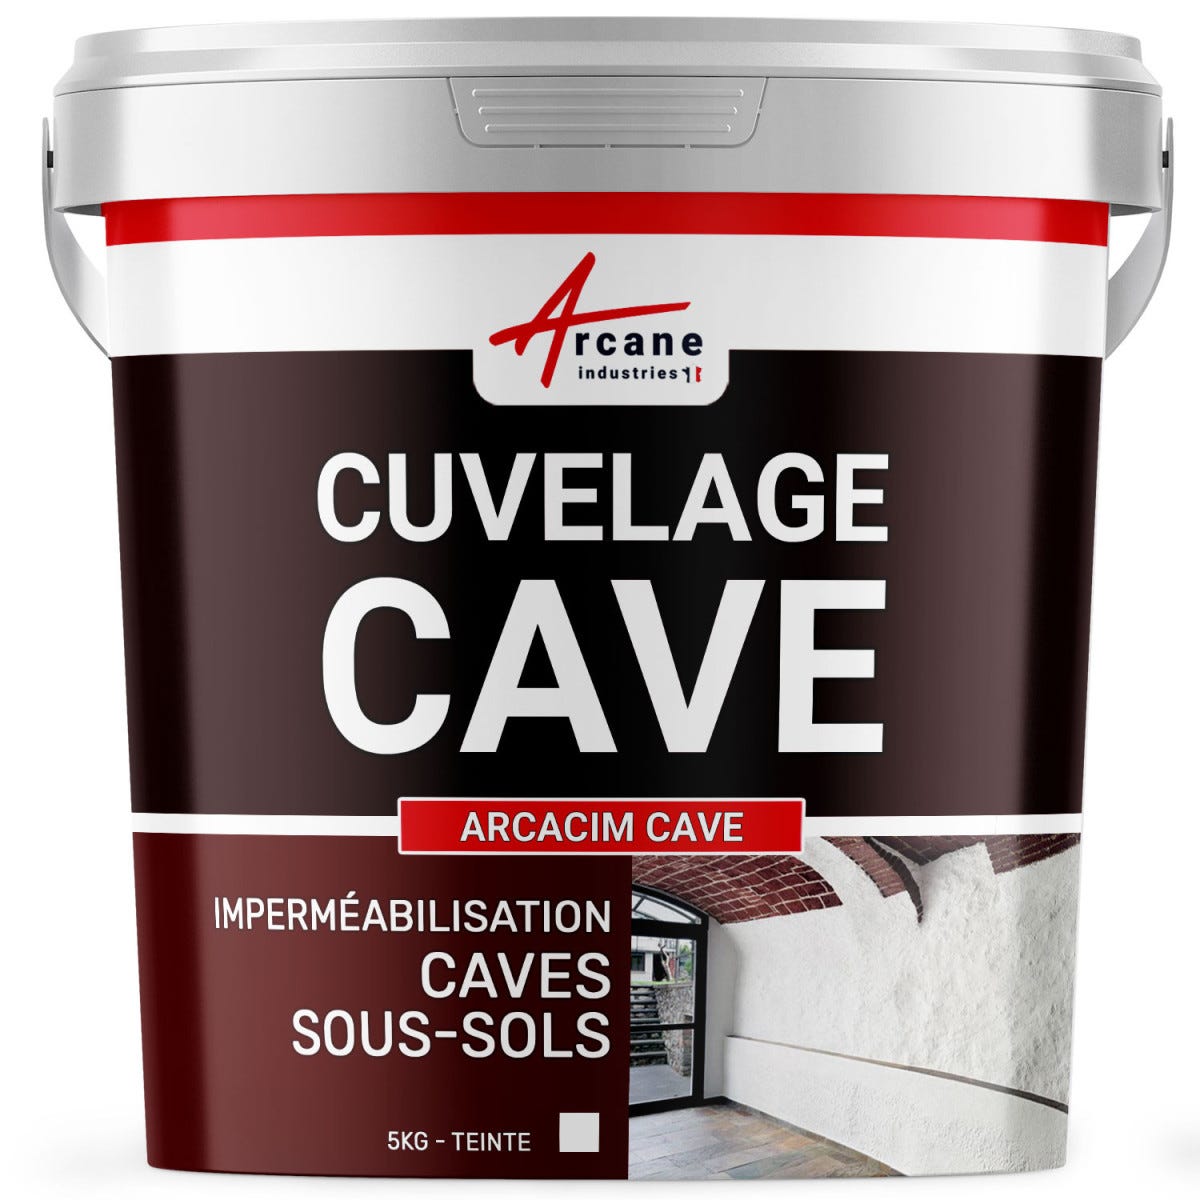 Enduit de cuvelage hydrofuge - Étanchéité cave sous-sol garage - ARCACIM CAVE - 5 kg - Blanc - ARCANE INDUSTRIES 0